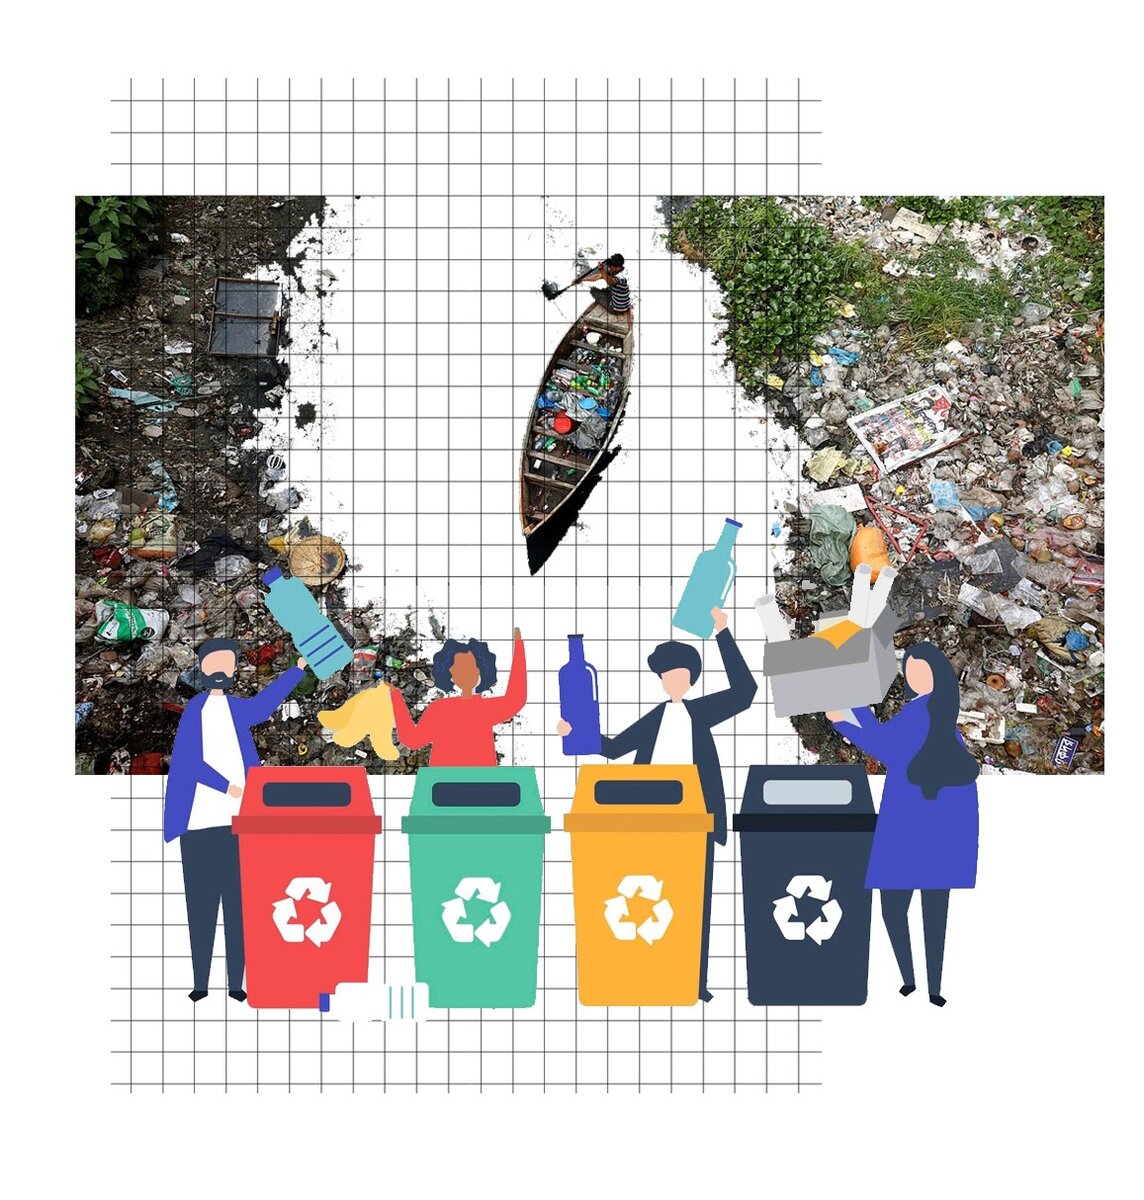 Рисунок на тему сортировка мусора